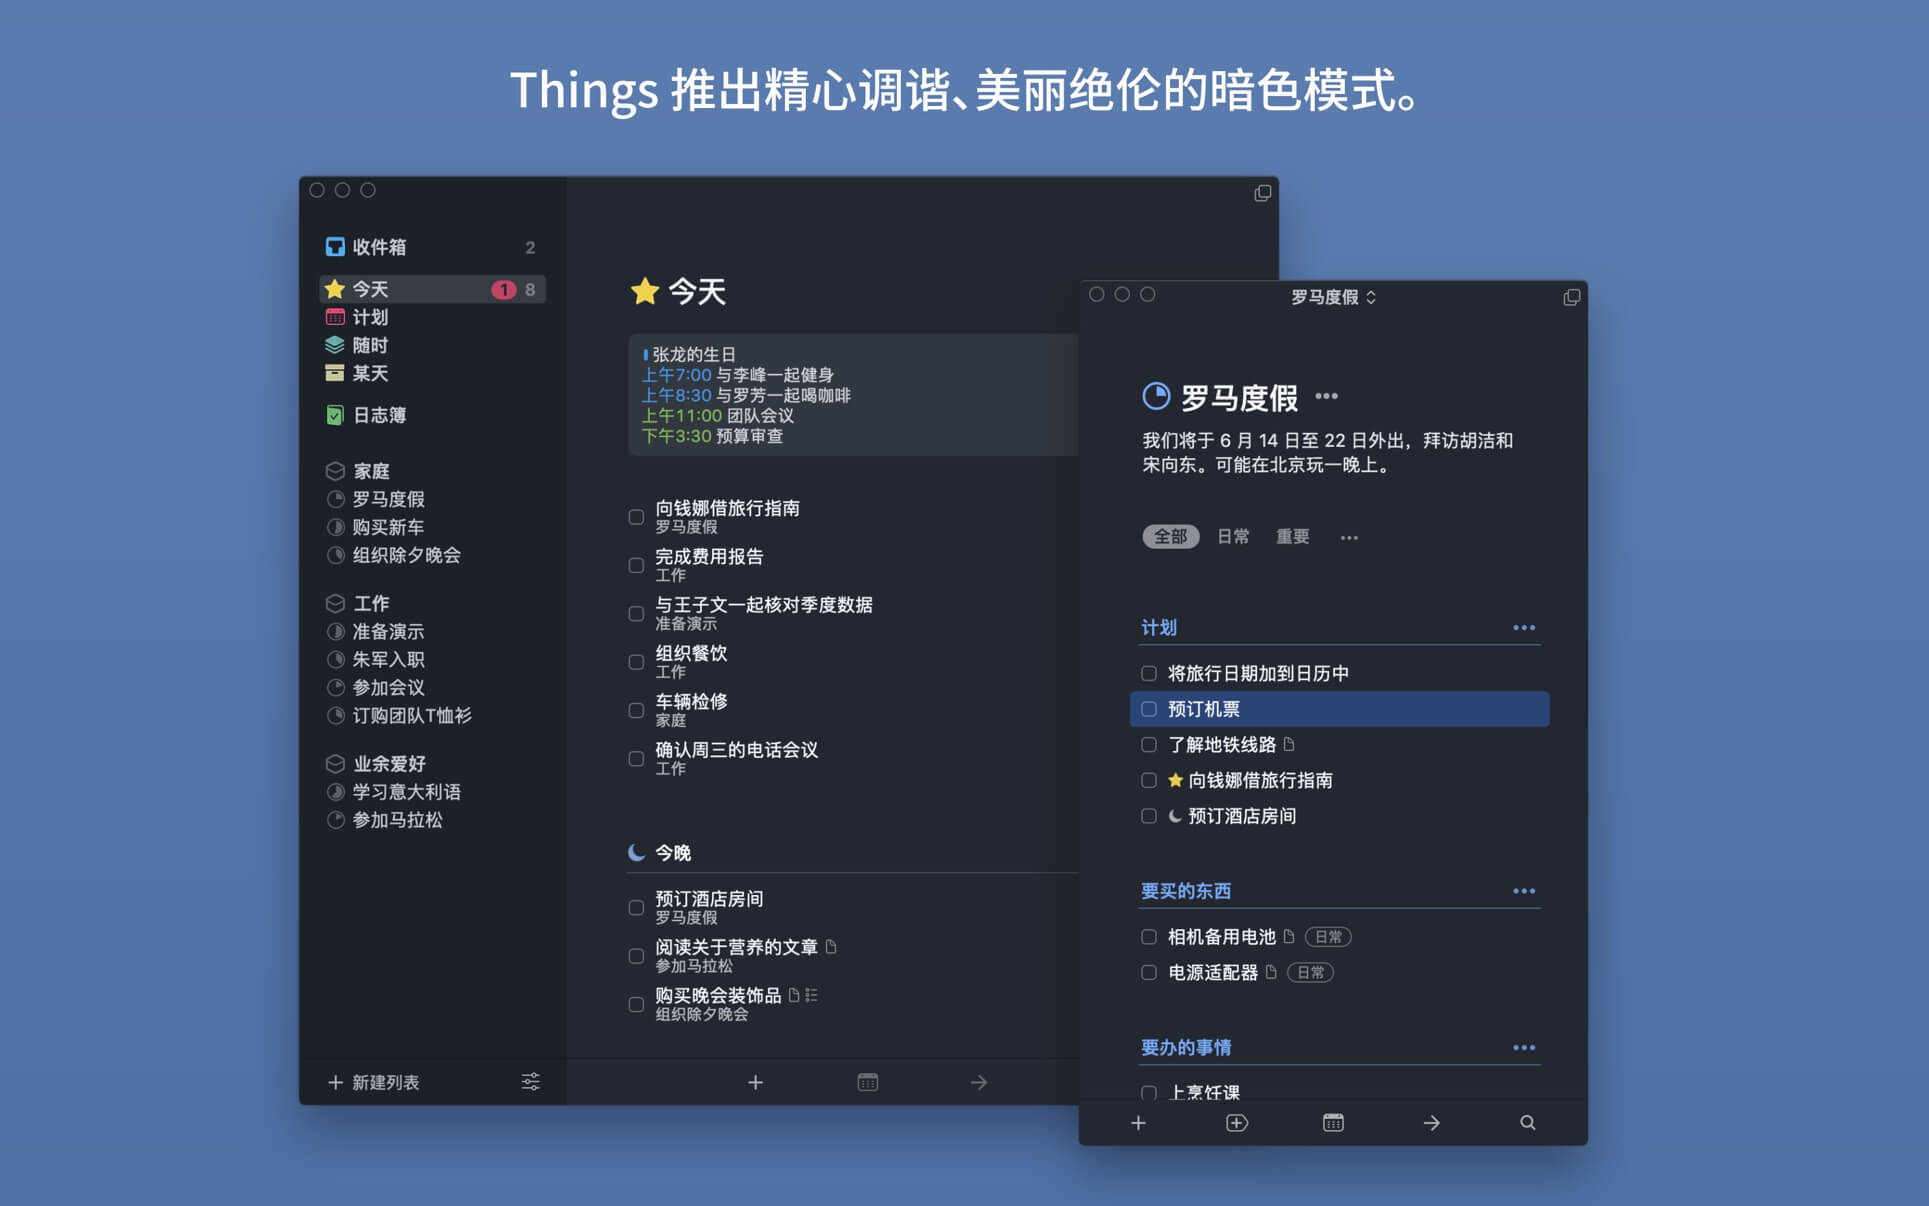 Things 3.15.16中文版